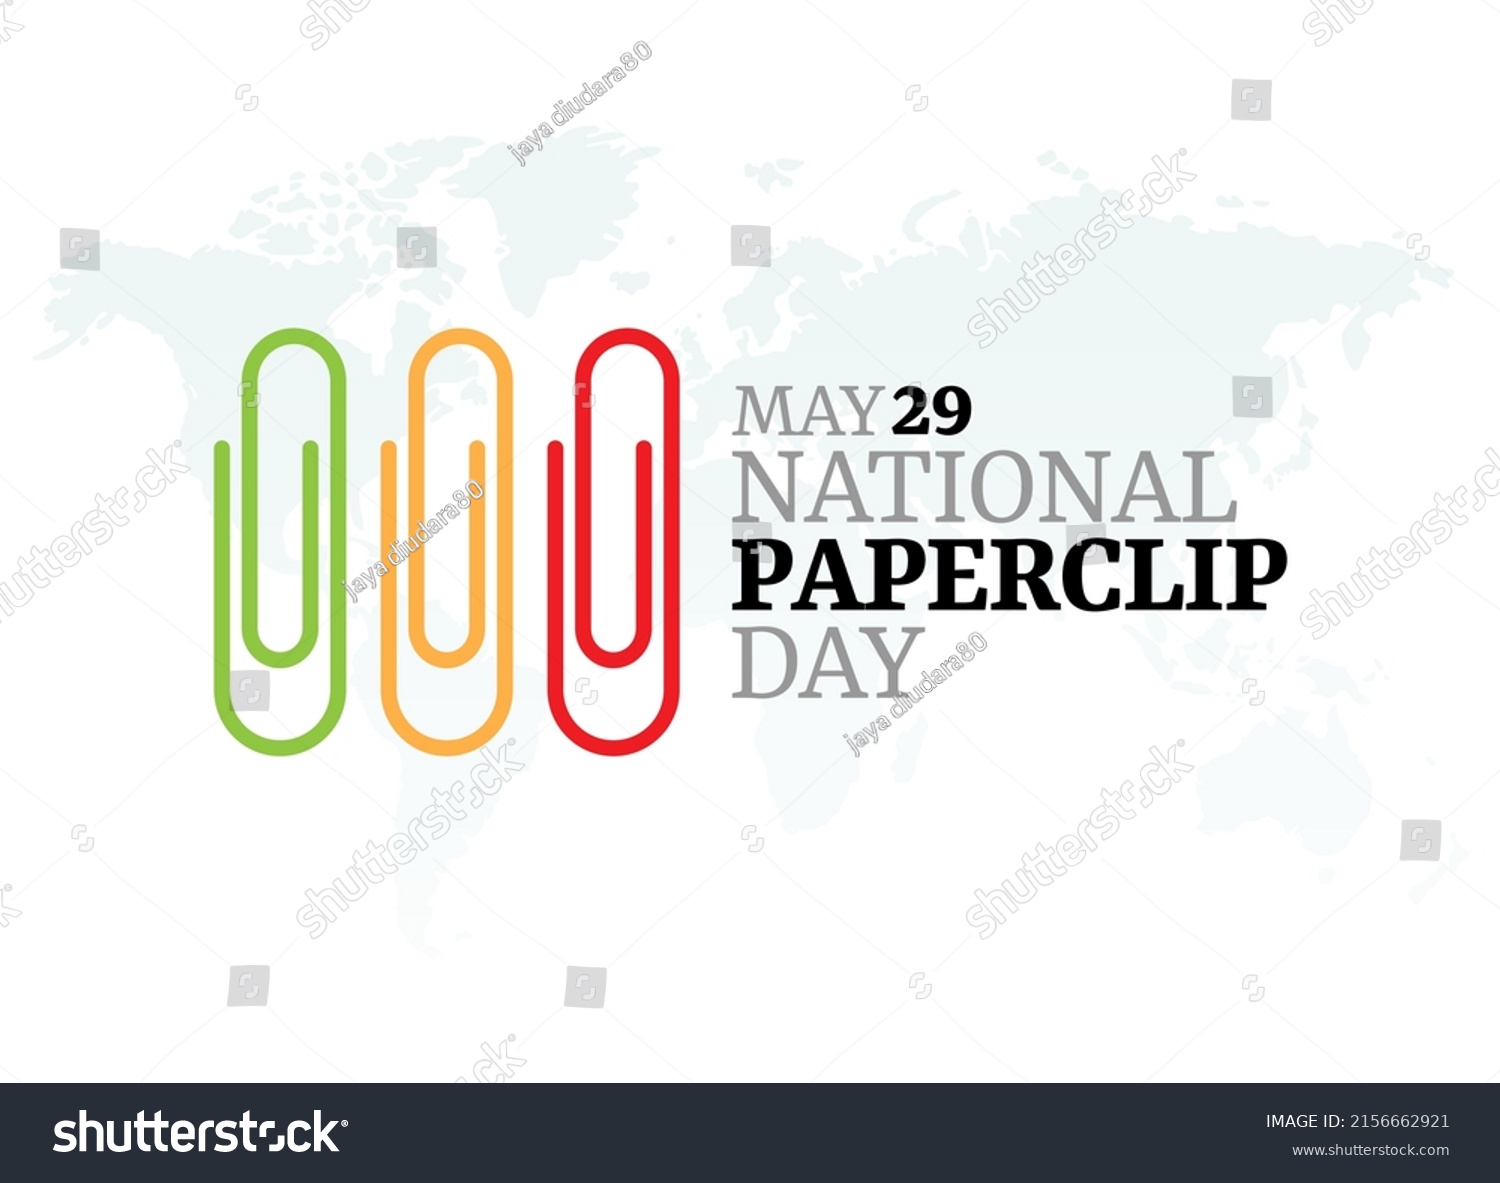 SVG of vector graphic of national paperclip day good for national paperclip day celebration. flat design. flyer design.flat illustration. svg